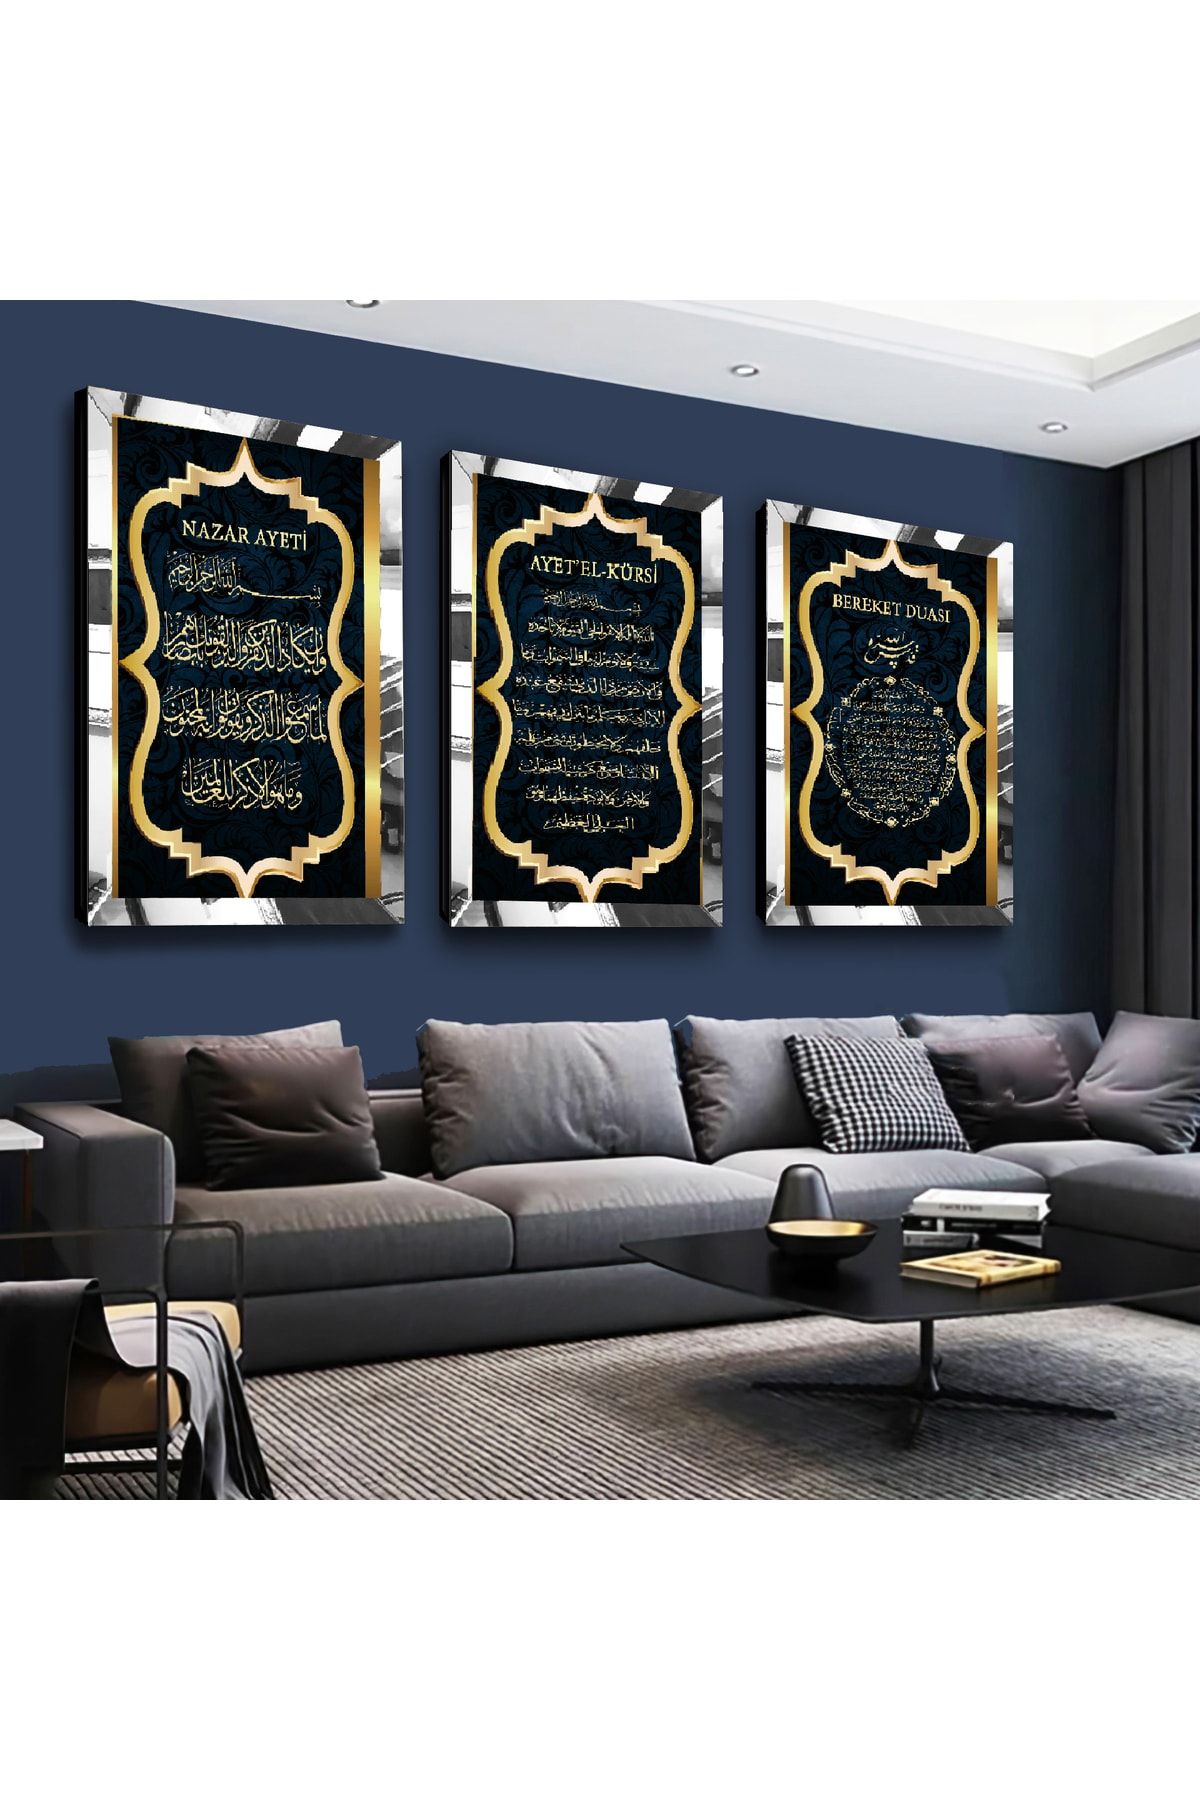 Zevahir Mobilya Dekorasyon Ayetel Kürsi, Nazar Ayeti, Bereket Duası Dini Gümüş Pleksi Kenar 3'lü Mdf Tablo Seti